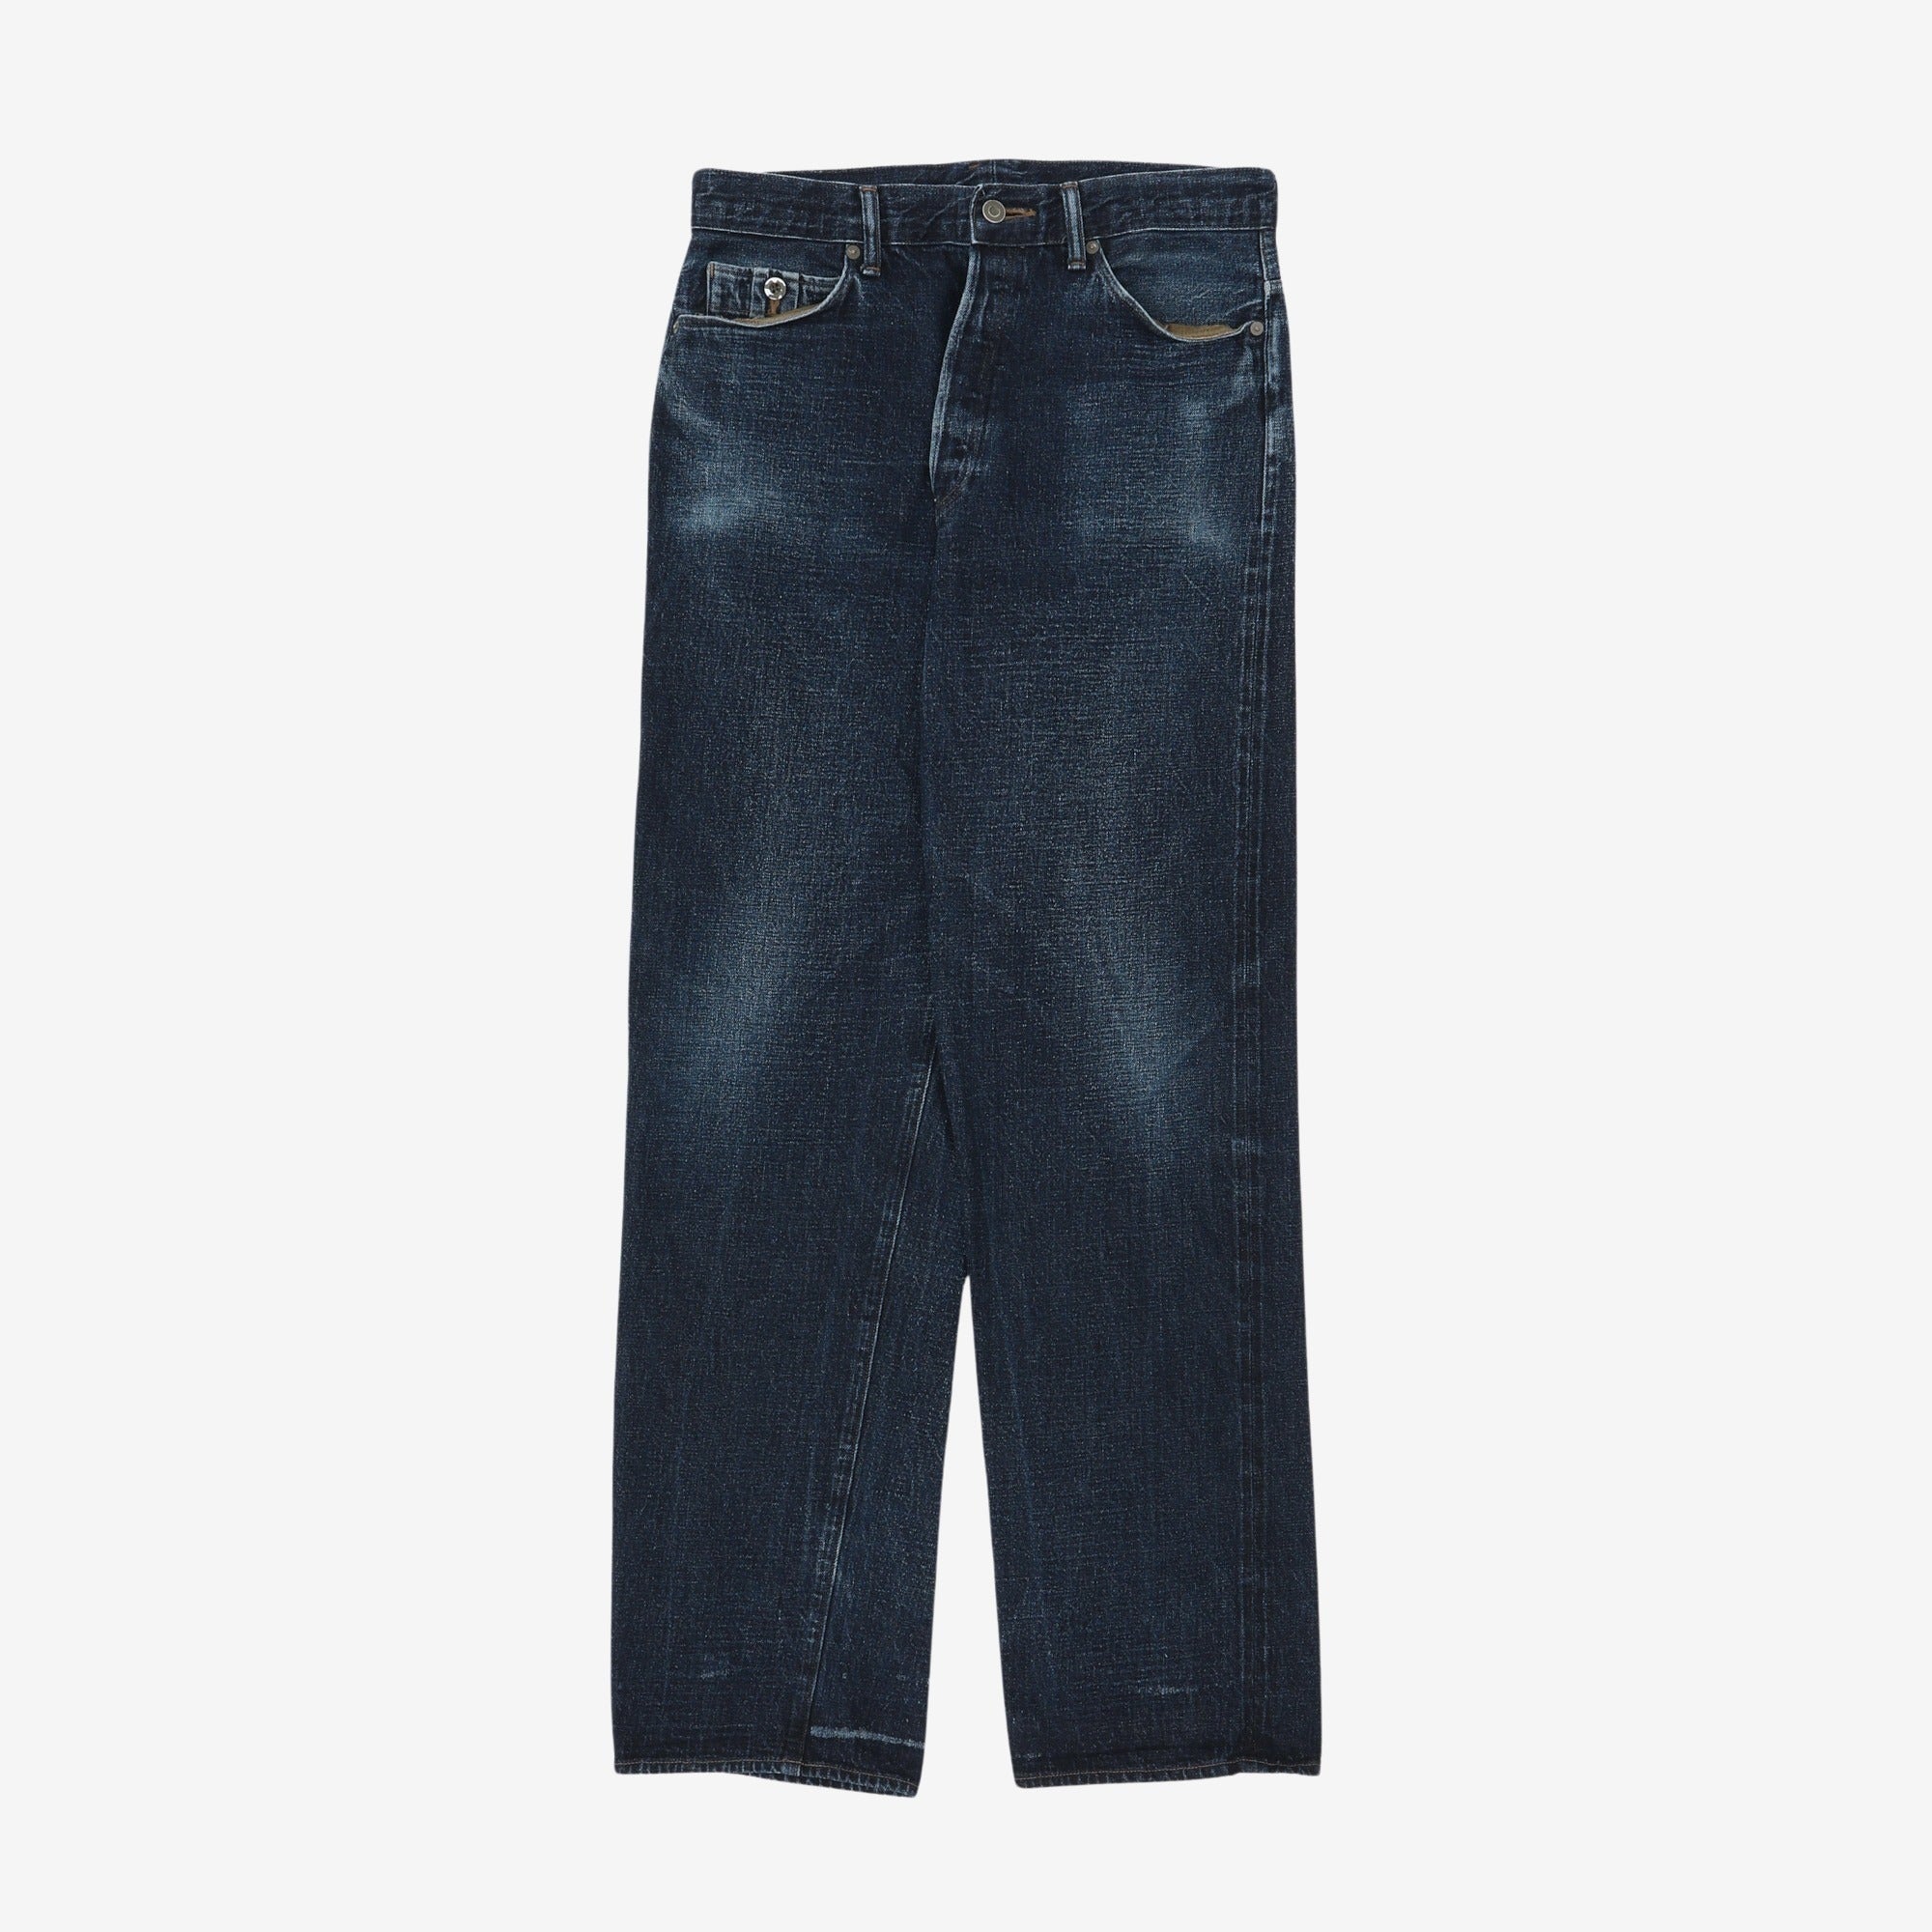 Denim Cargo Jeans (32W x 32L)